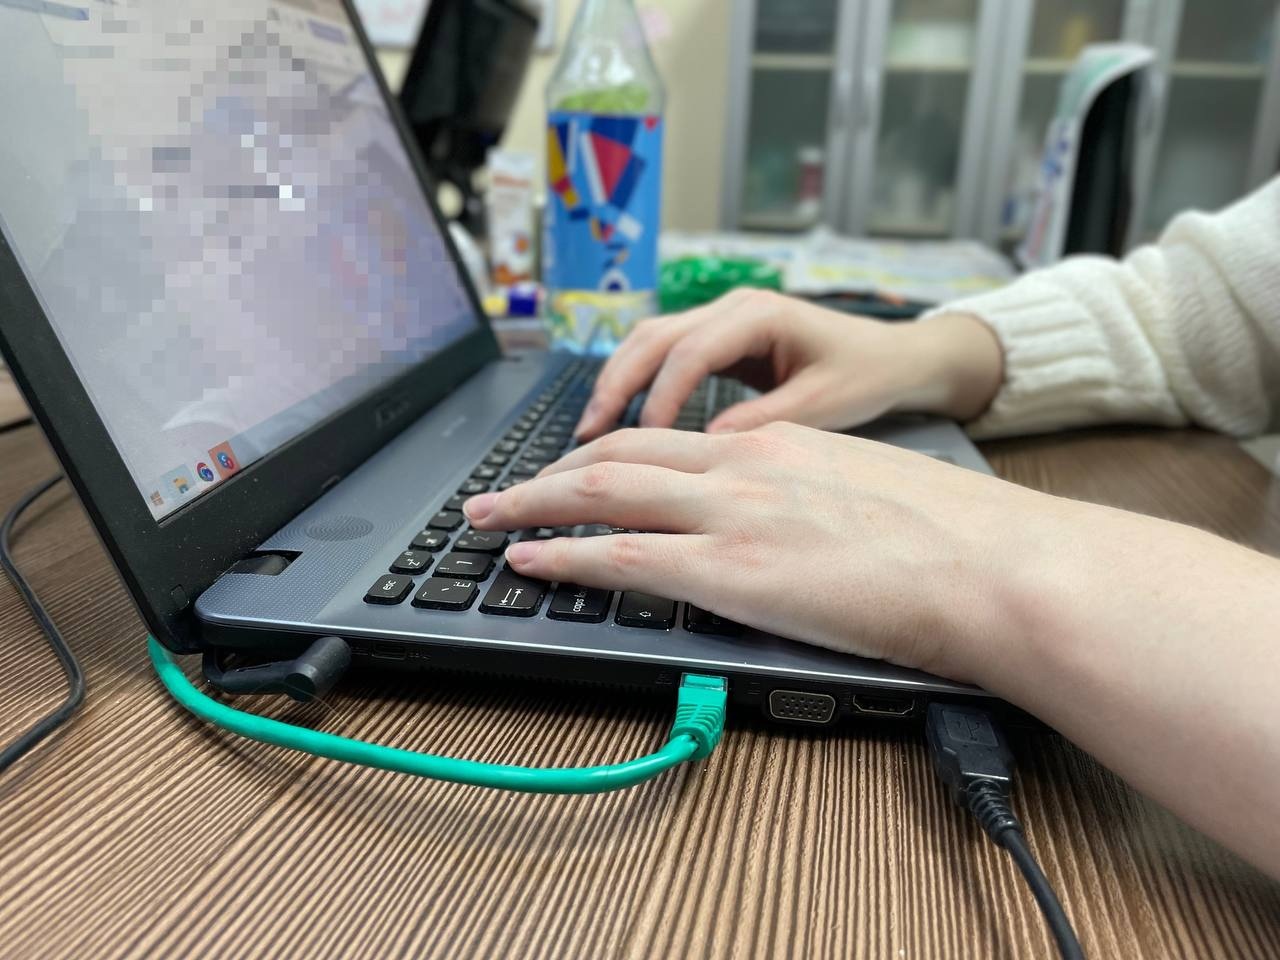 В Сыктывкаре мужчина украл ноутбук прямо из офиса, пока сотрудники были на обеде 